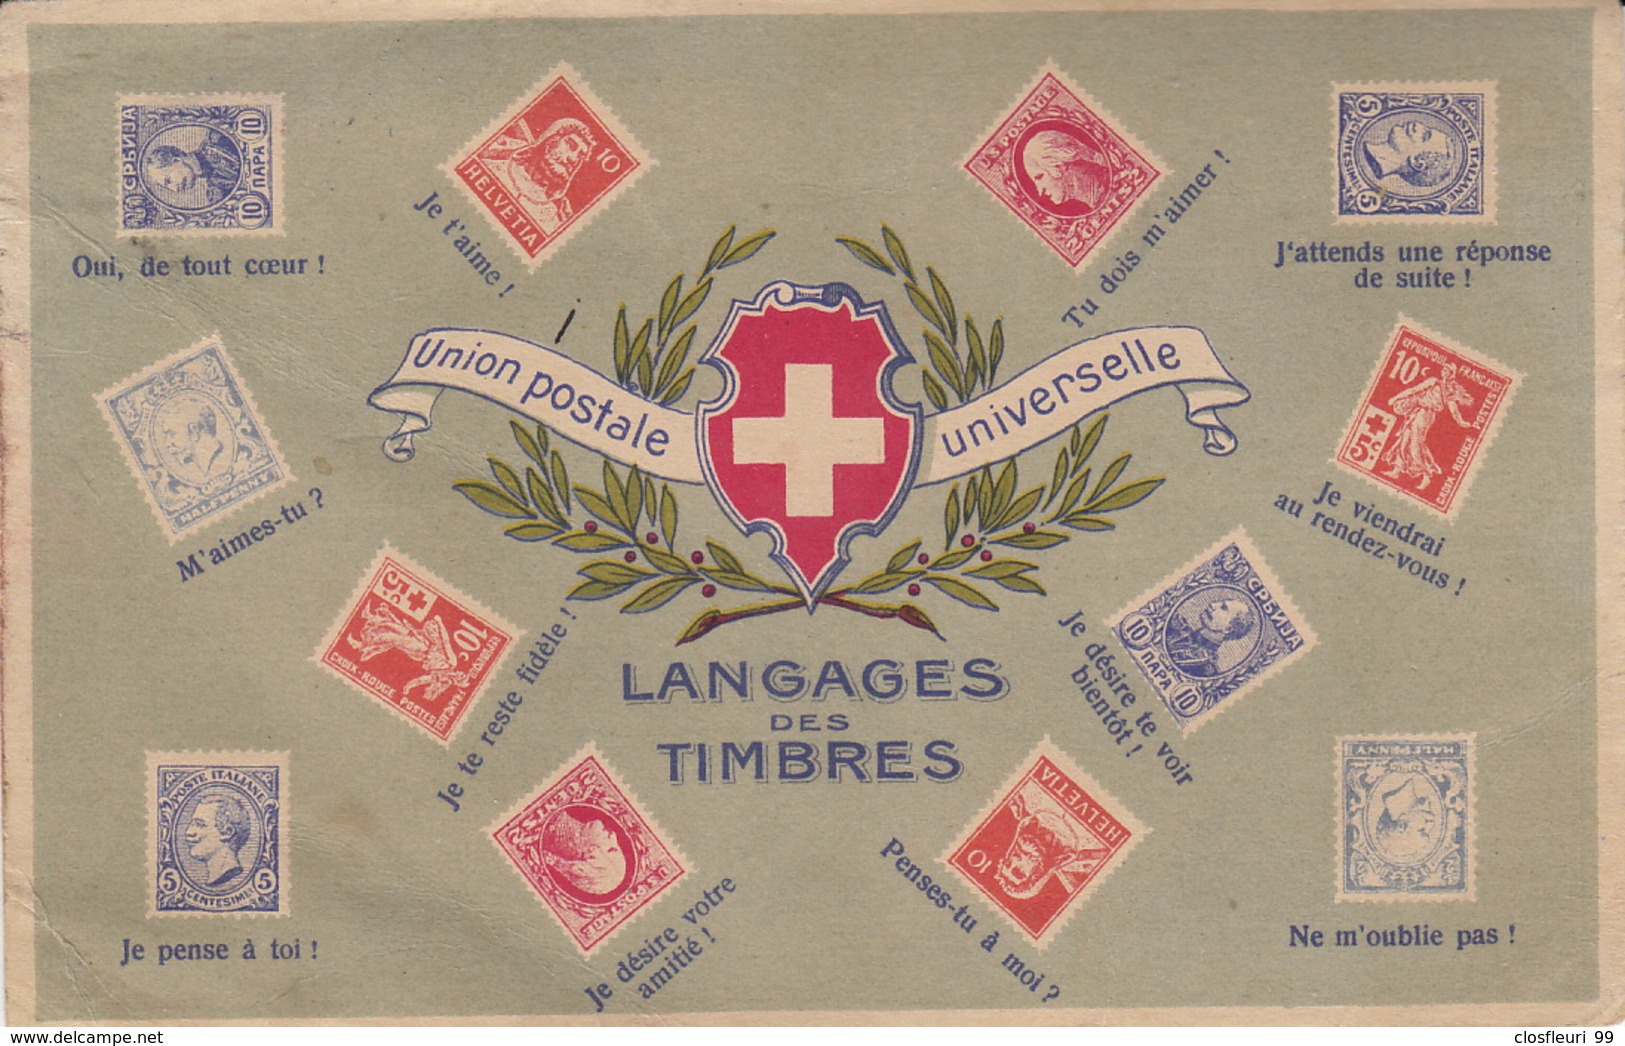 Union Postale Universelle / Langages Des Timbres /Blason Suisse / . Non écrite. Ed. Perrochet Matile Lausanne - Timbres (représentations)